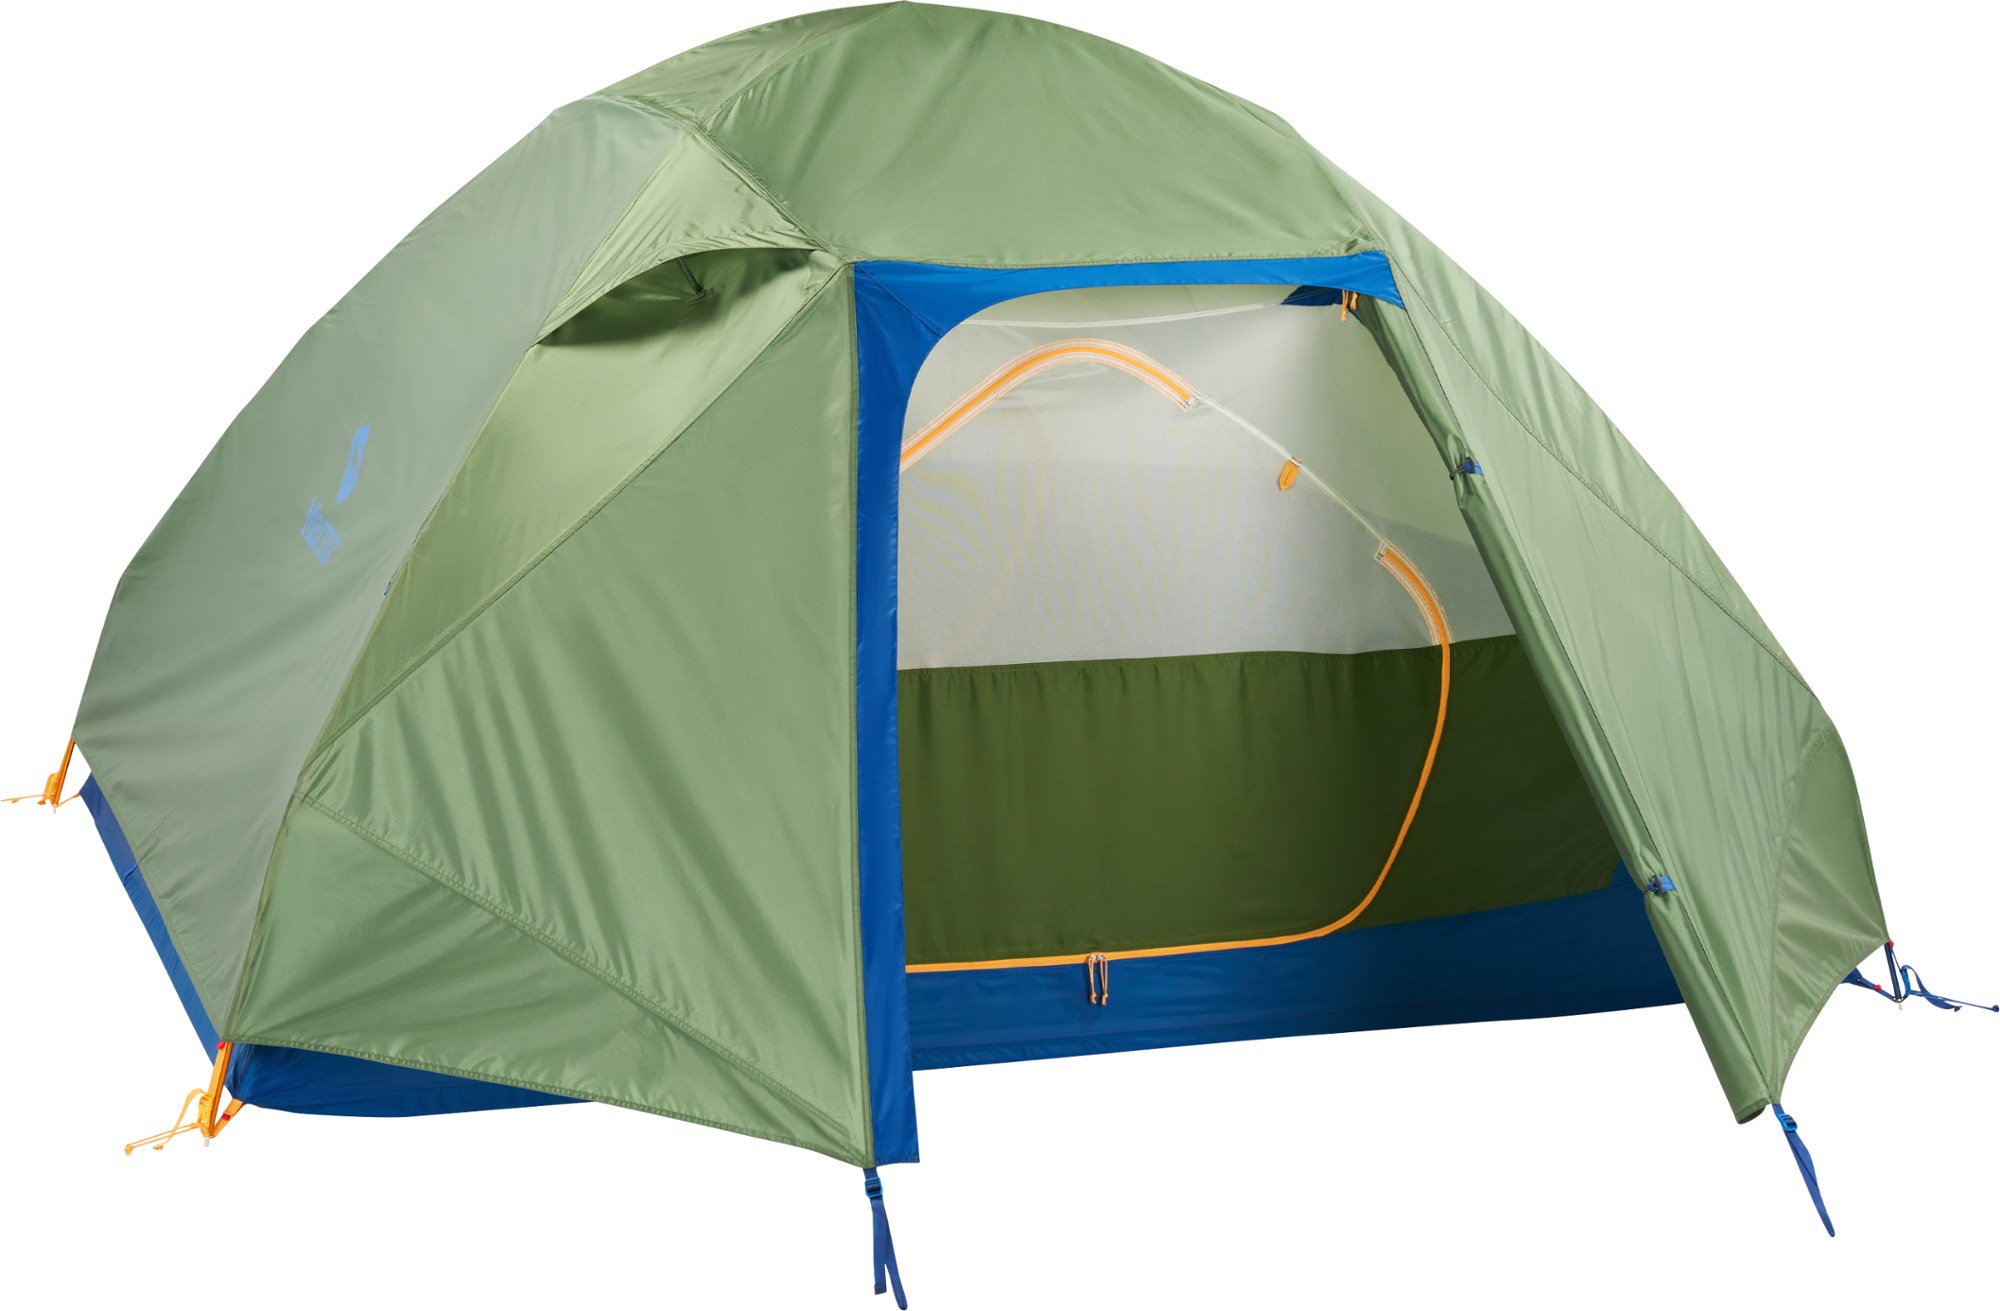 Вольфрамовая палатка 4P с опорой на опору Marmot, зеленый